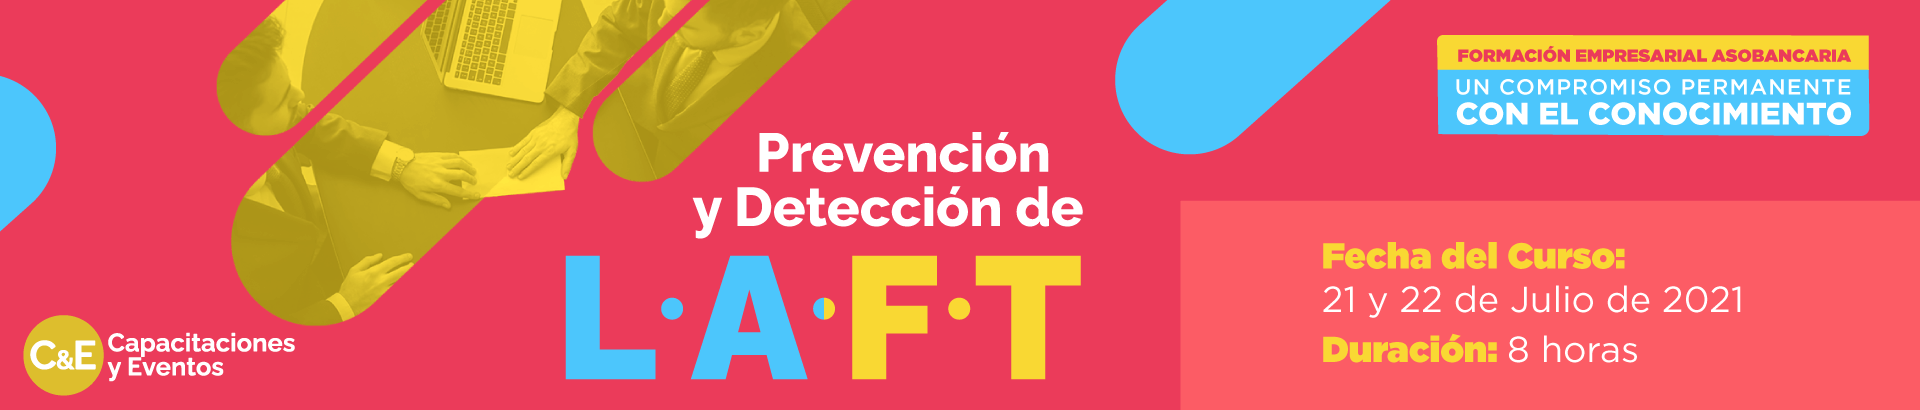 Capacitación Prevención y detección de LAFT Asobancaria